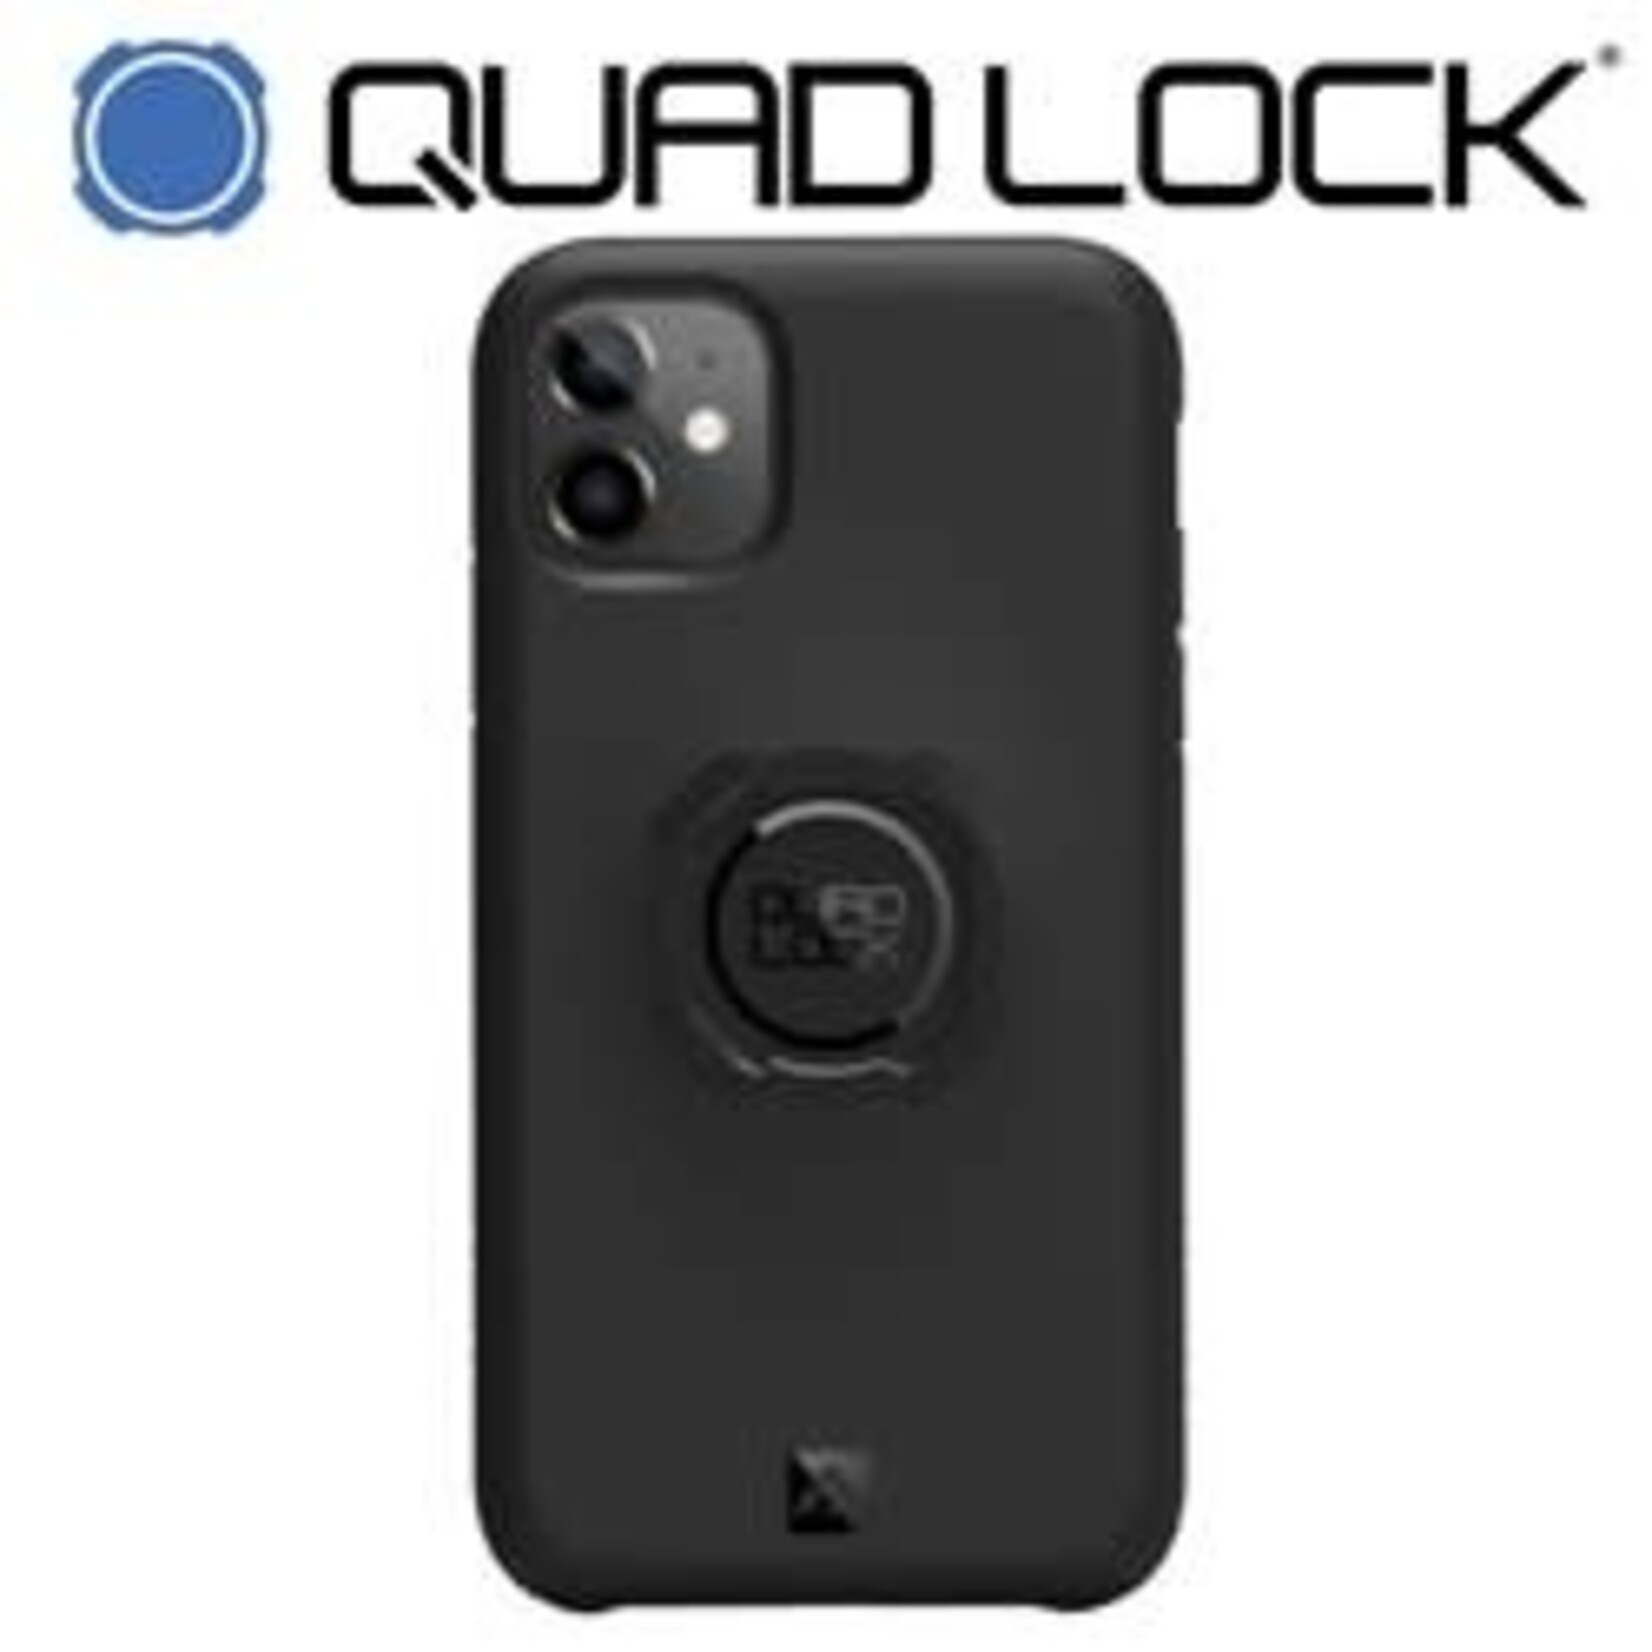 Quad Lock QUADLOCK  iPhone Case